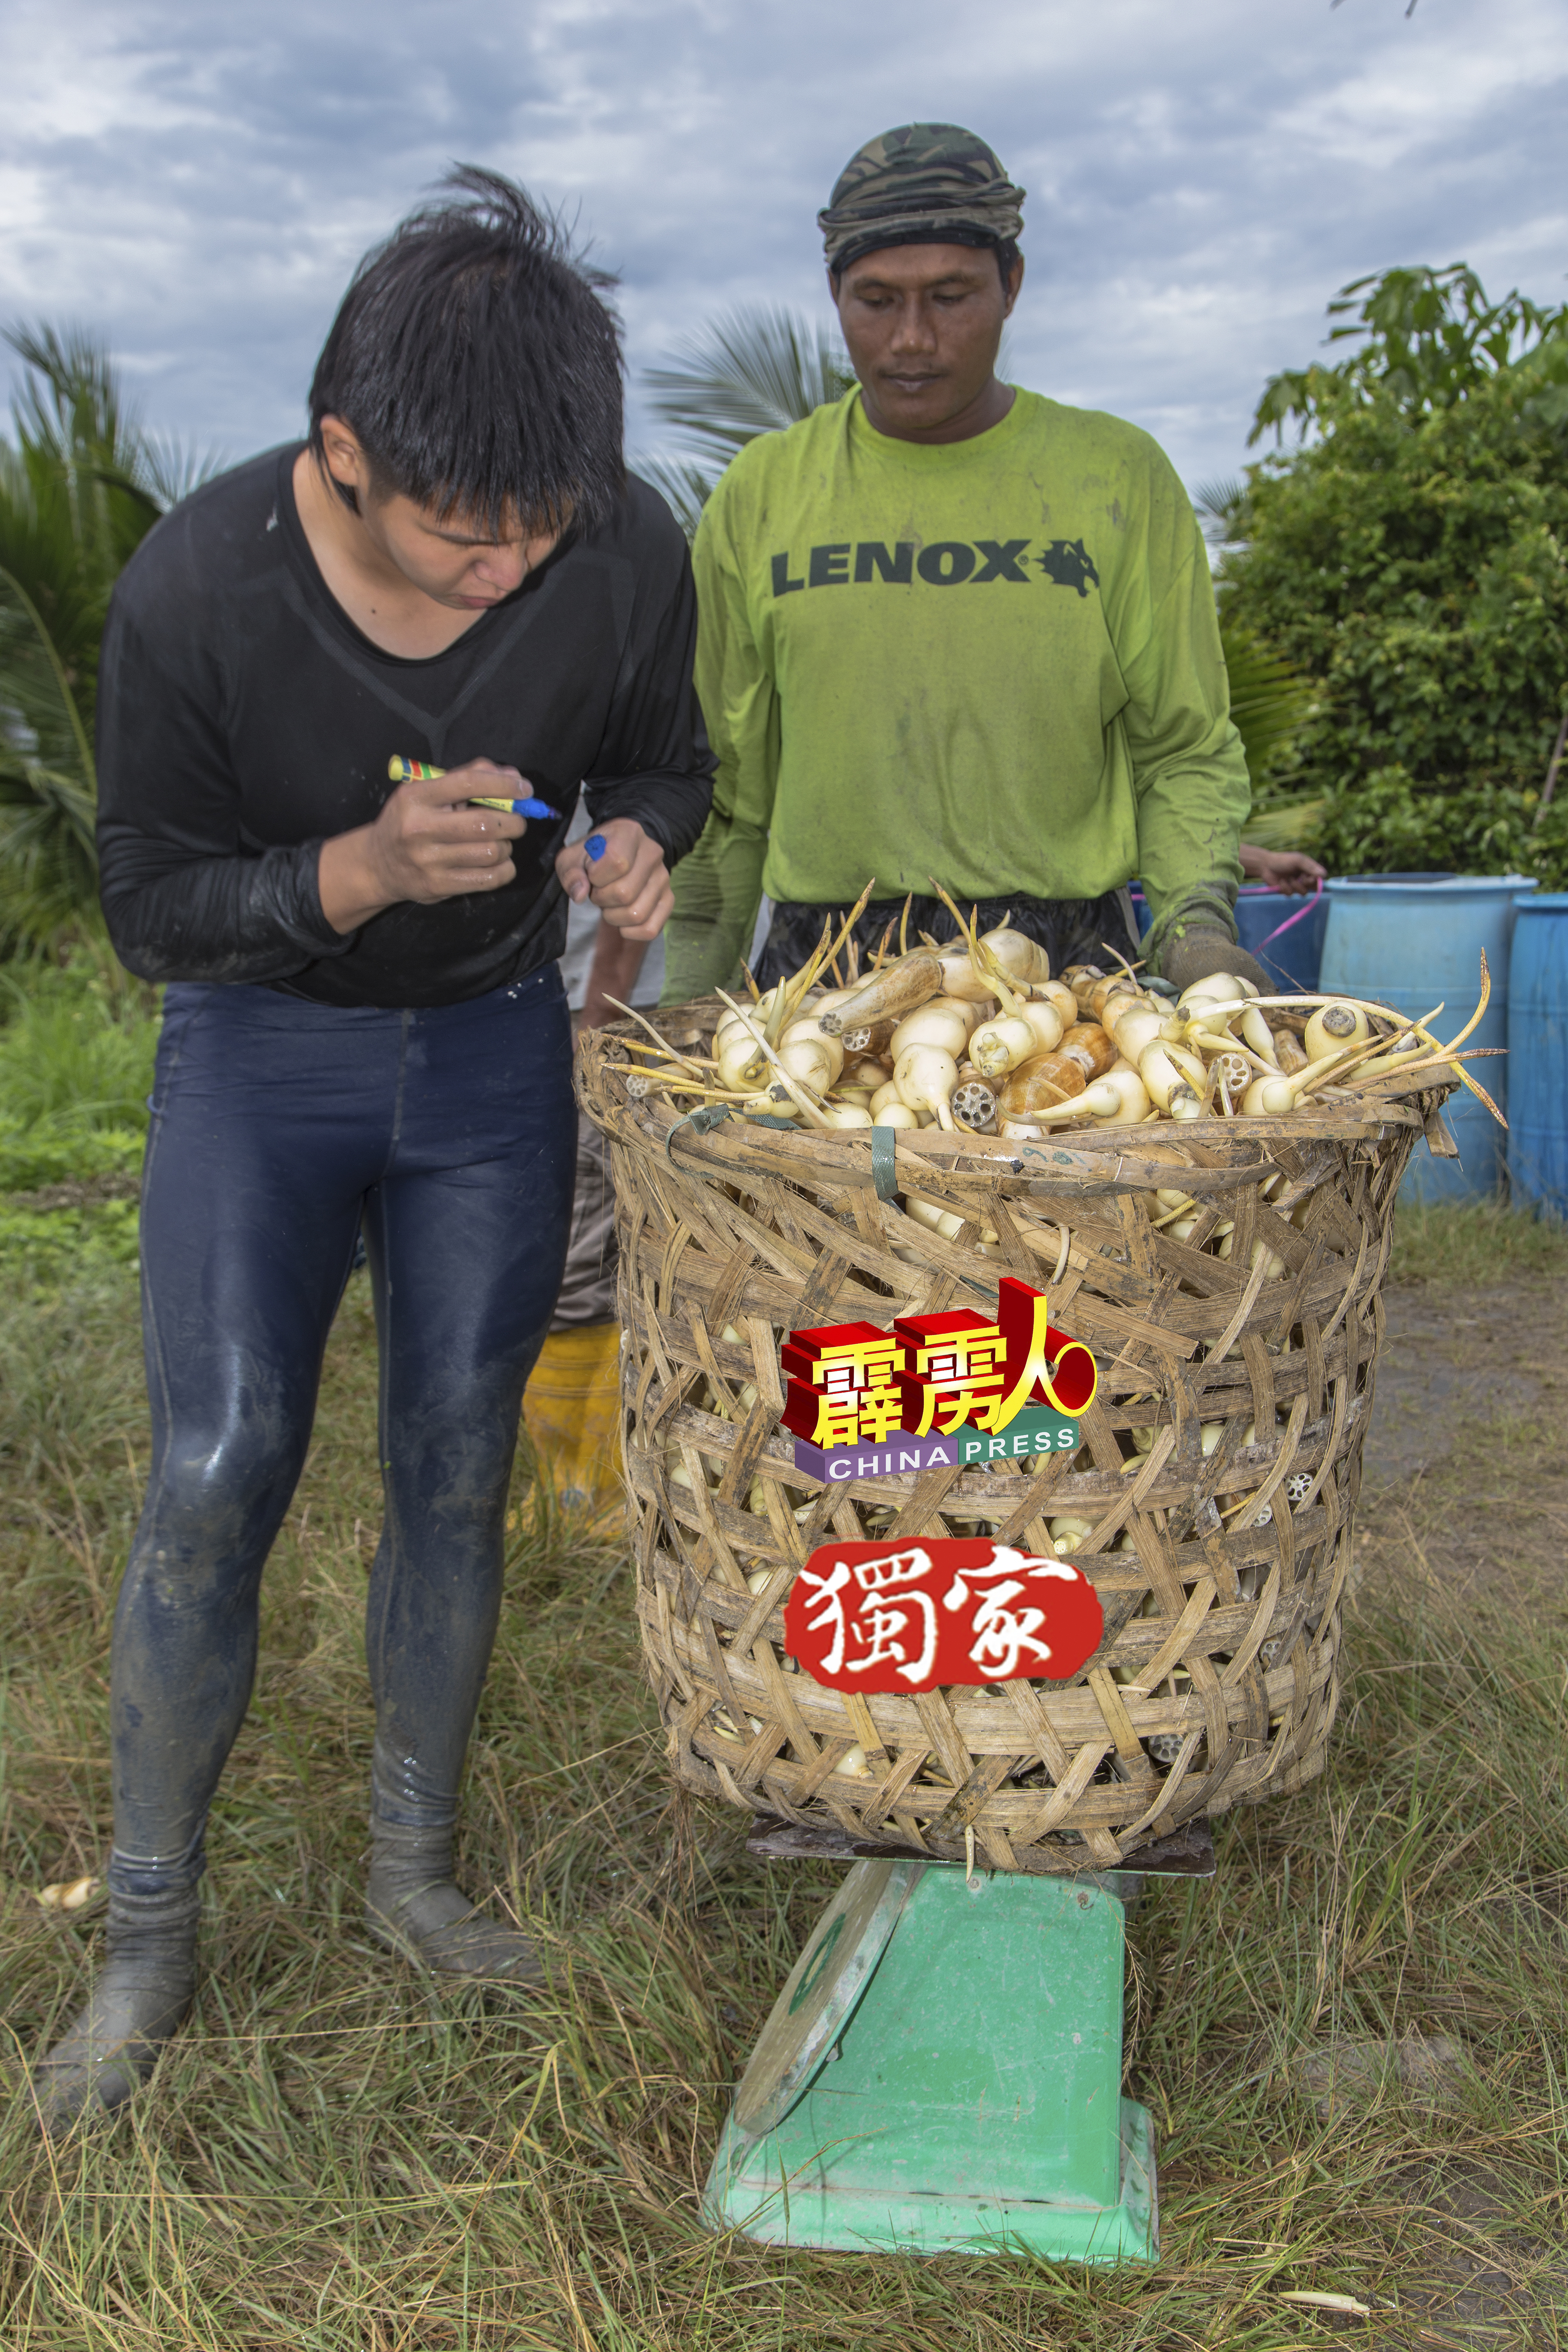 工人每天的工资以每公斤计算，收入经常随着莲藕的市场价格浮动。